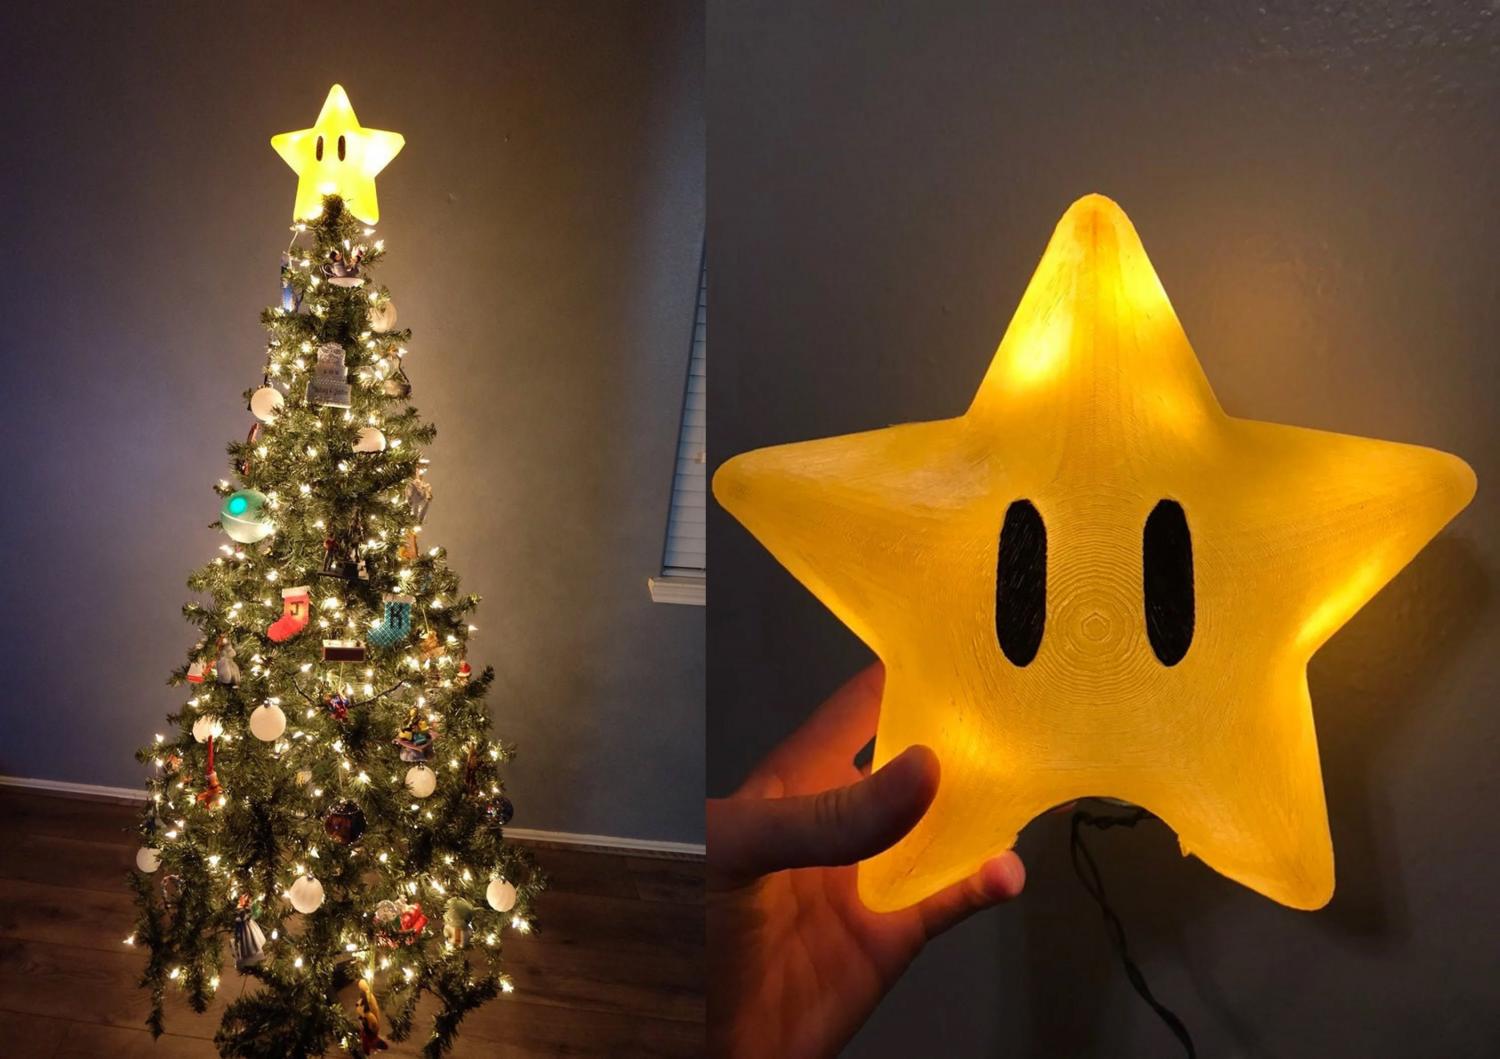 Sobeta Christmas Star Tree Topper Retro Super Mario Star Unique Design 3D Pixel Style Star Topper Decor